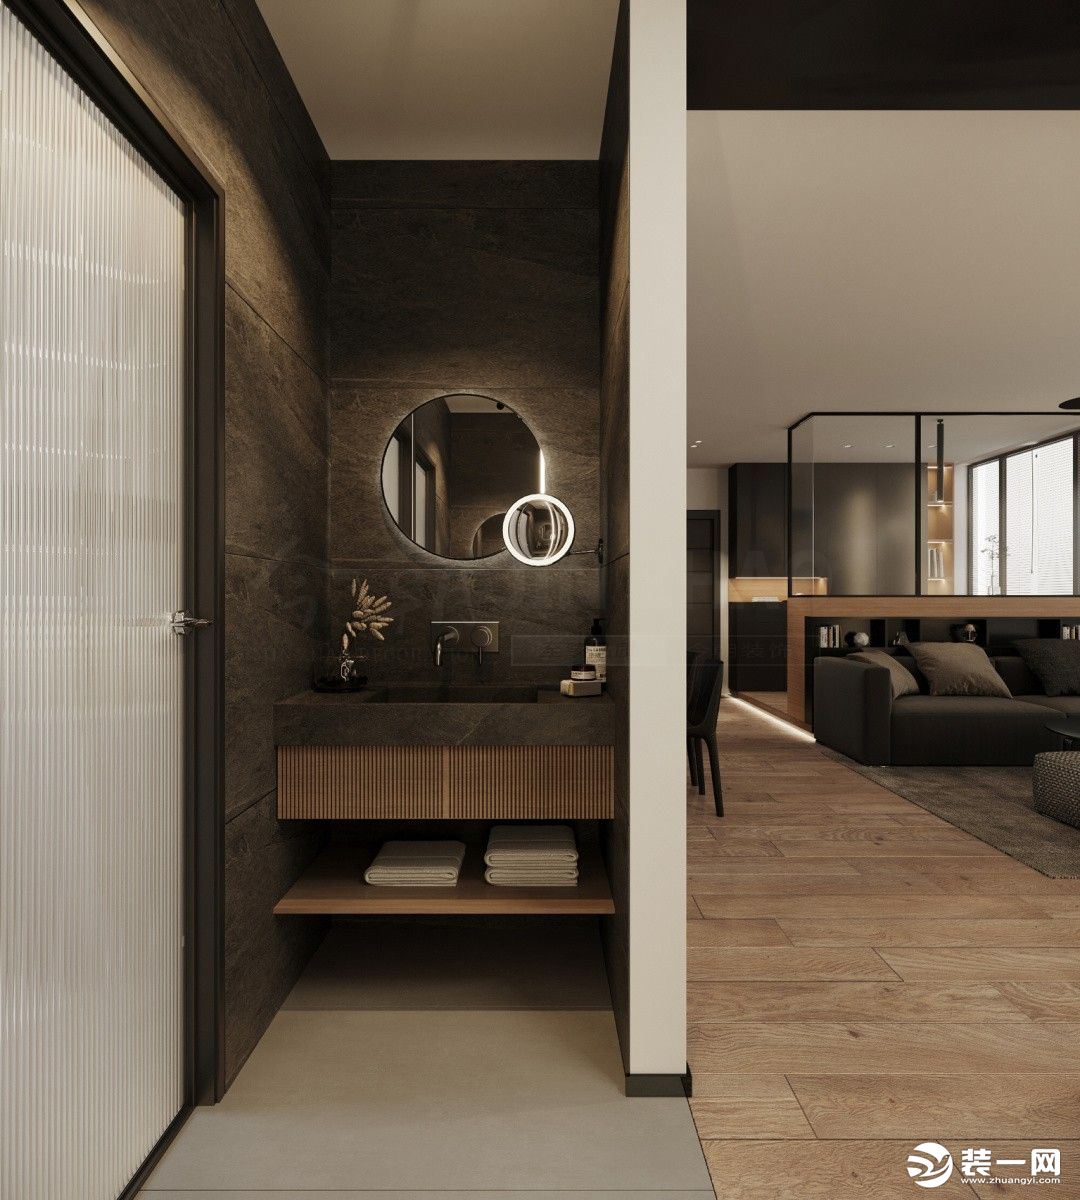 洁白简单的空间，没有多余的装饰，给人的是一种优雅干净的气息，大白墙的氛围下，摆有灰色沙发，黑色茶几，